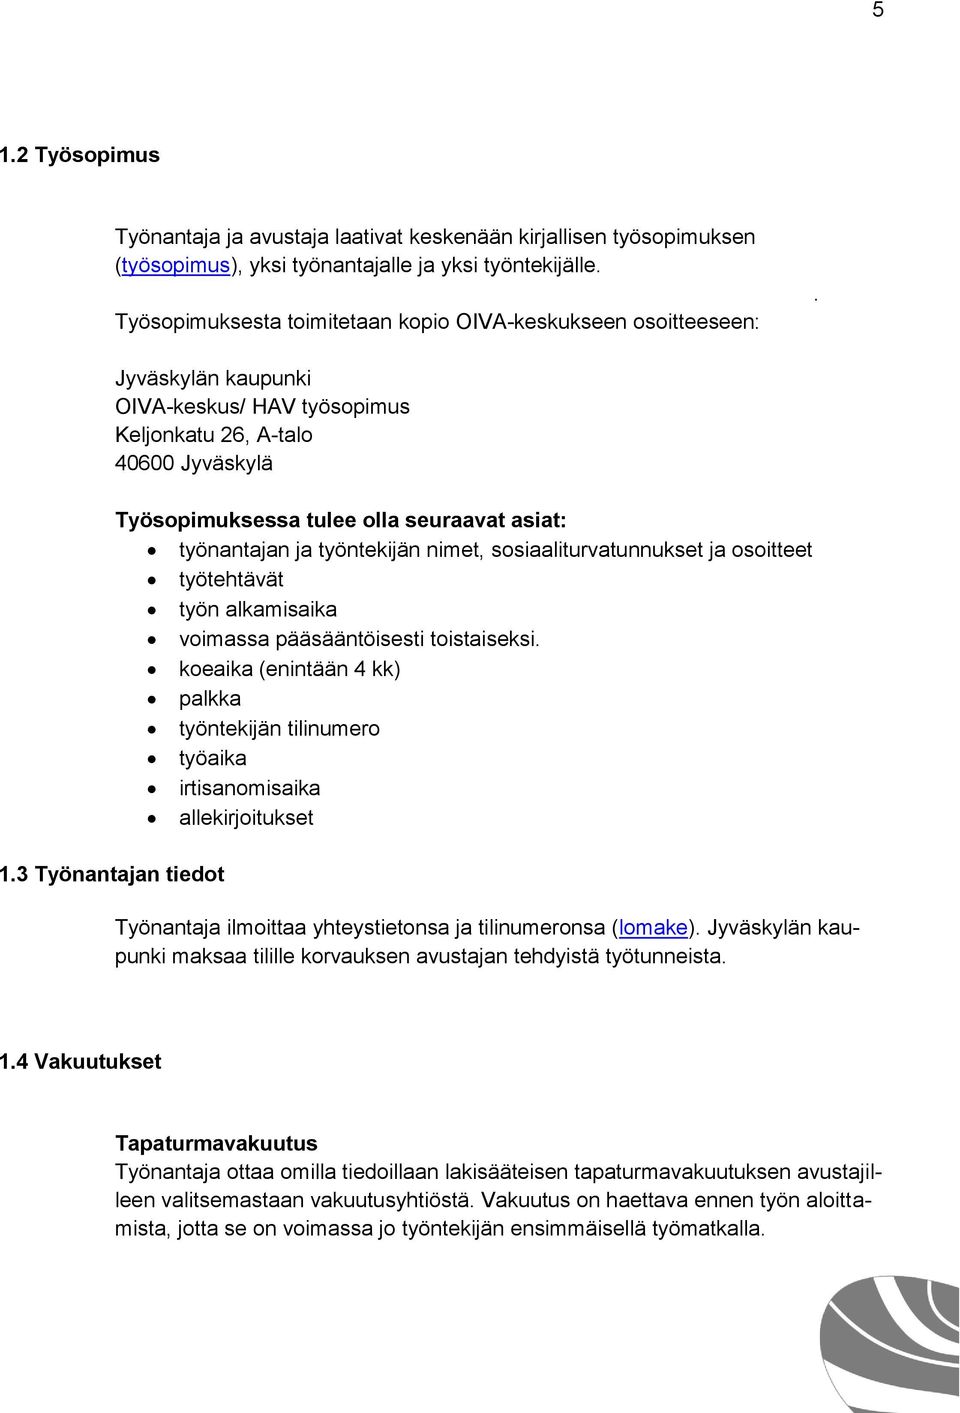 Jyväskylän kaupunki OIVA-keskus/ HAV työsopimus Keljonkatu 26, A-talo 40600 Jyväskylä Työsopimuksessa tulee olla seuraavat asiat: työnantajan ja työntekijän nimet, sosiaaliturvatunnukset ja osoitteet